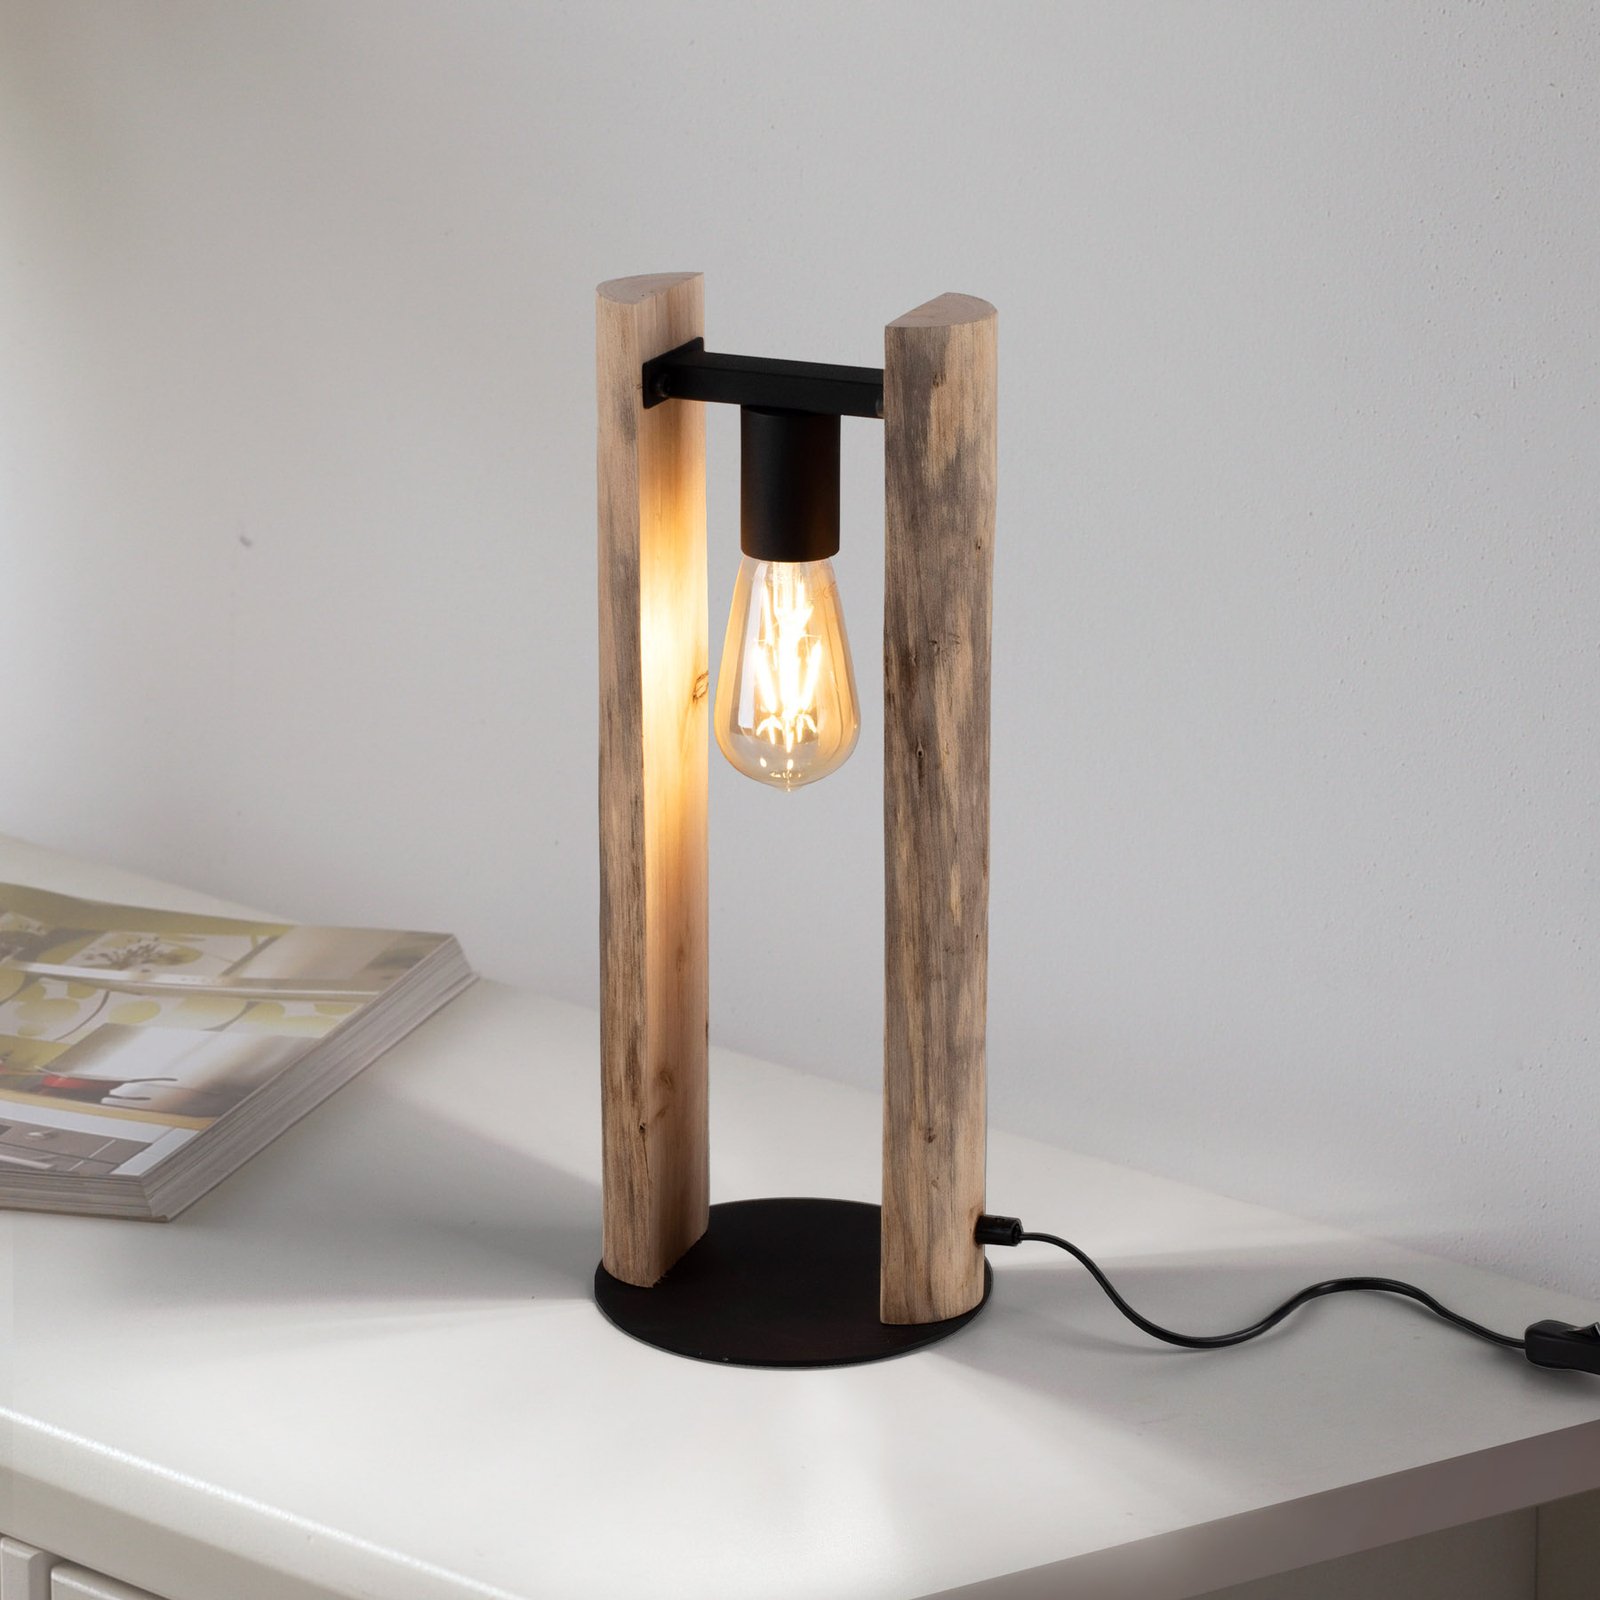 Bordslampa av timmer tillverkad av trä